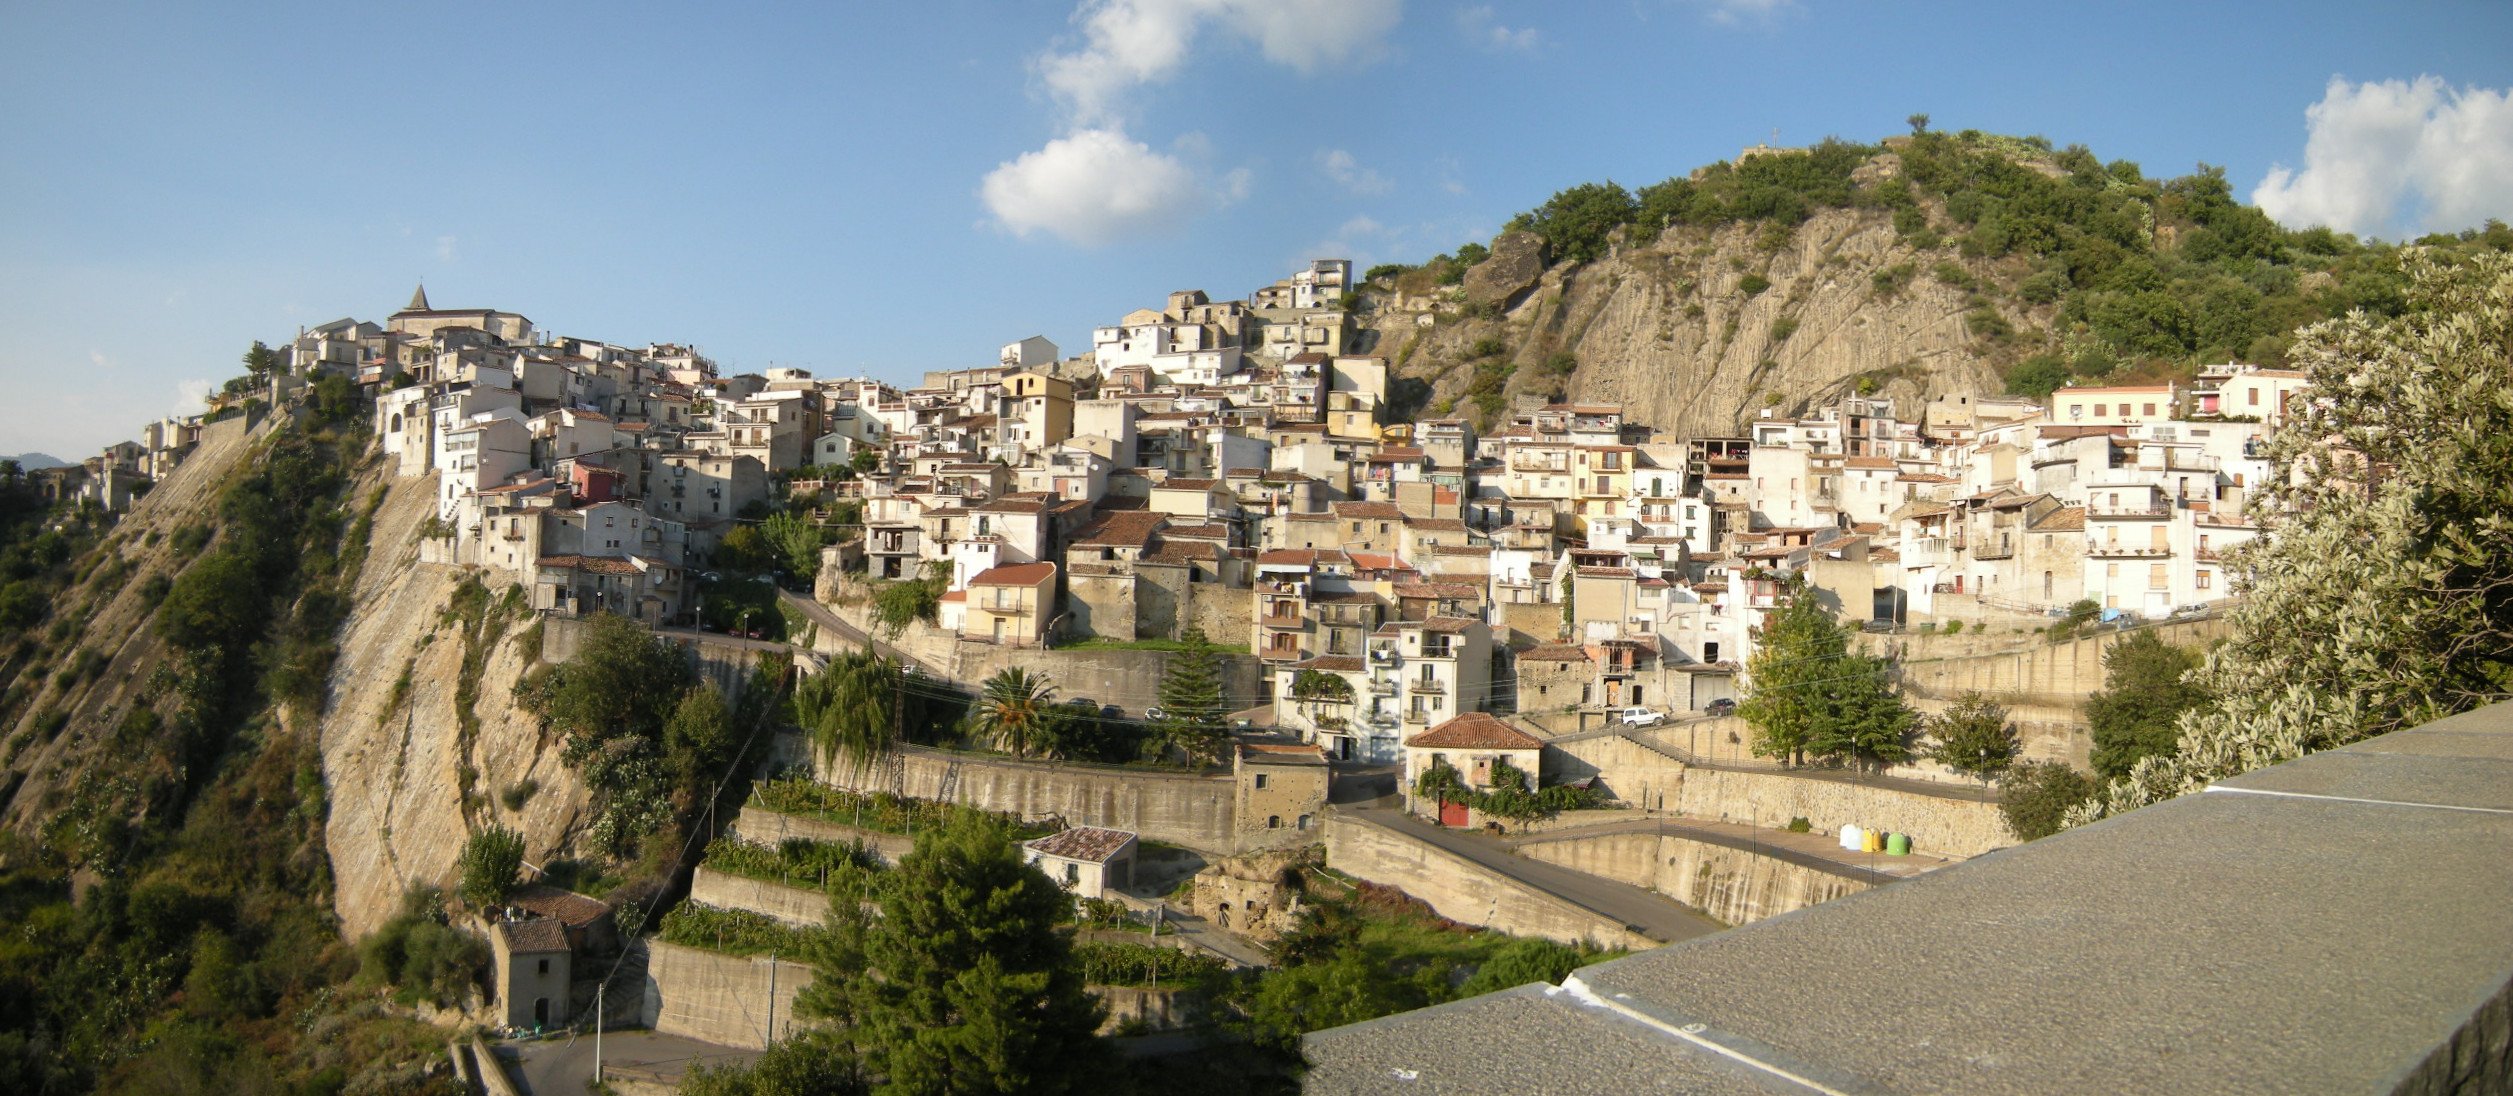 Municipality of Camastra